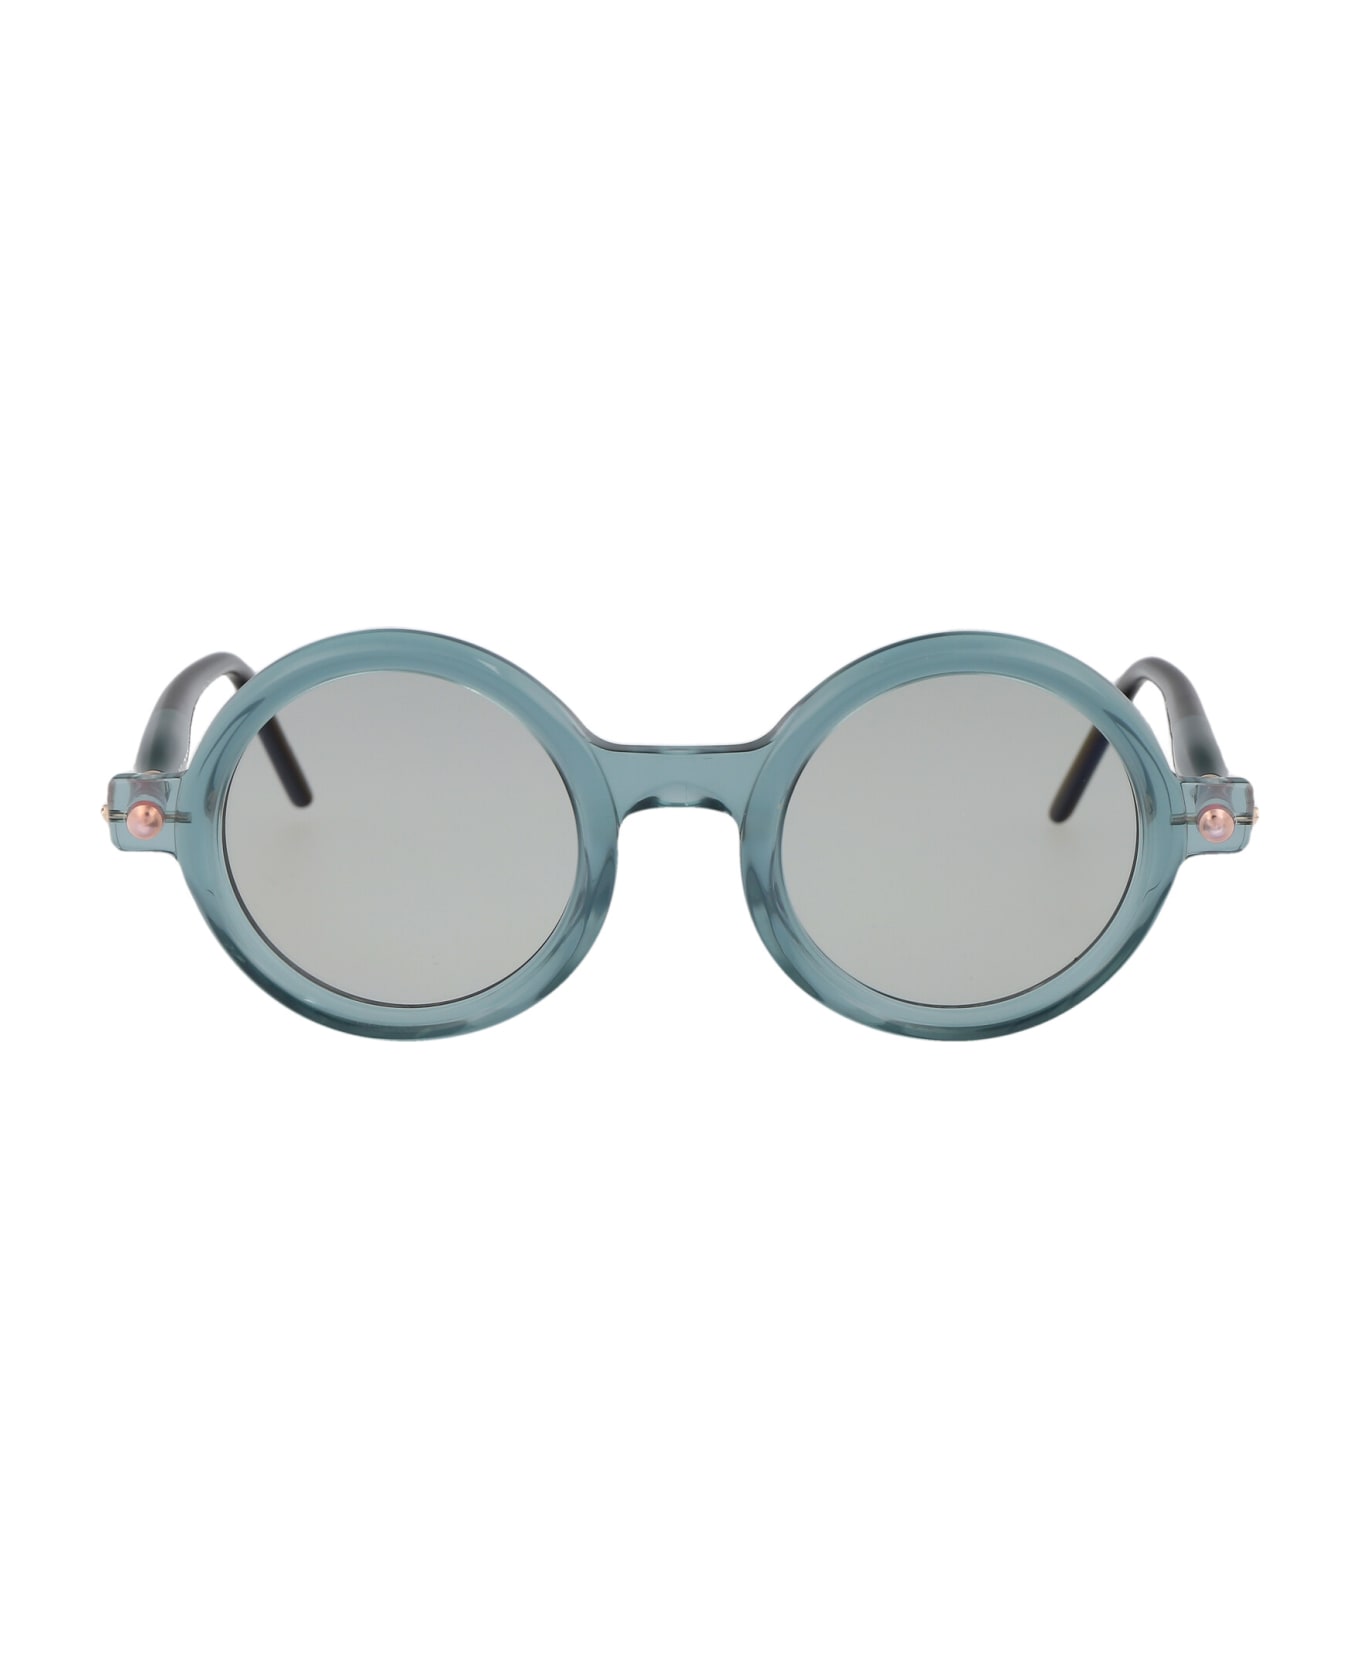 Kuboraum Maske P1 Sunglasses - MKG grey1*